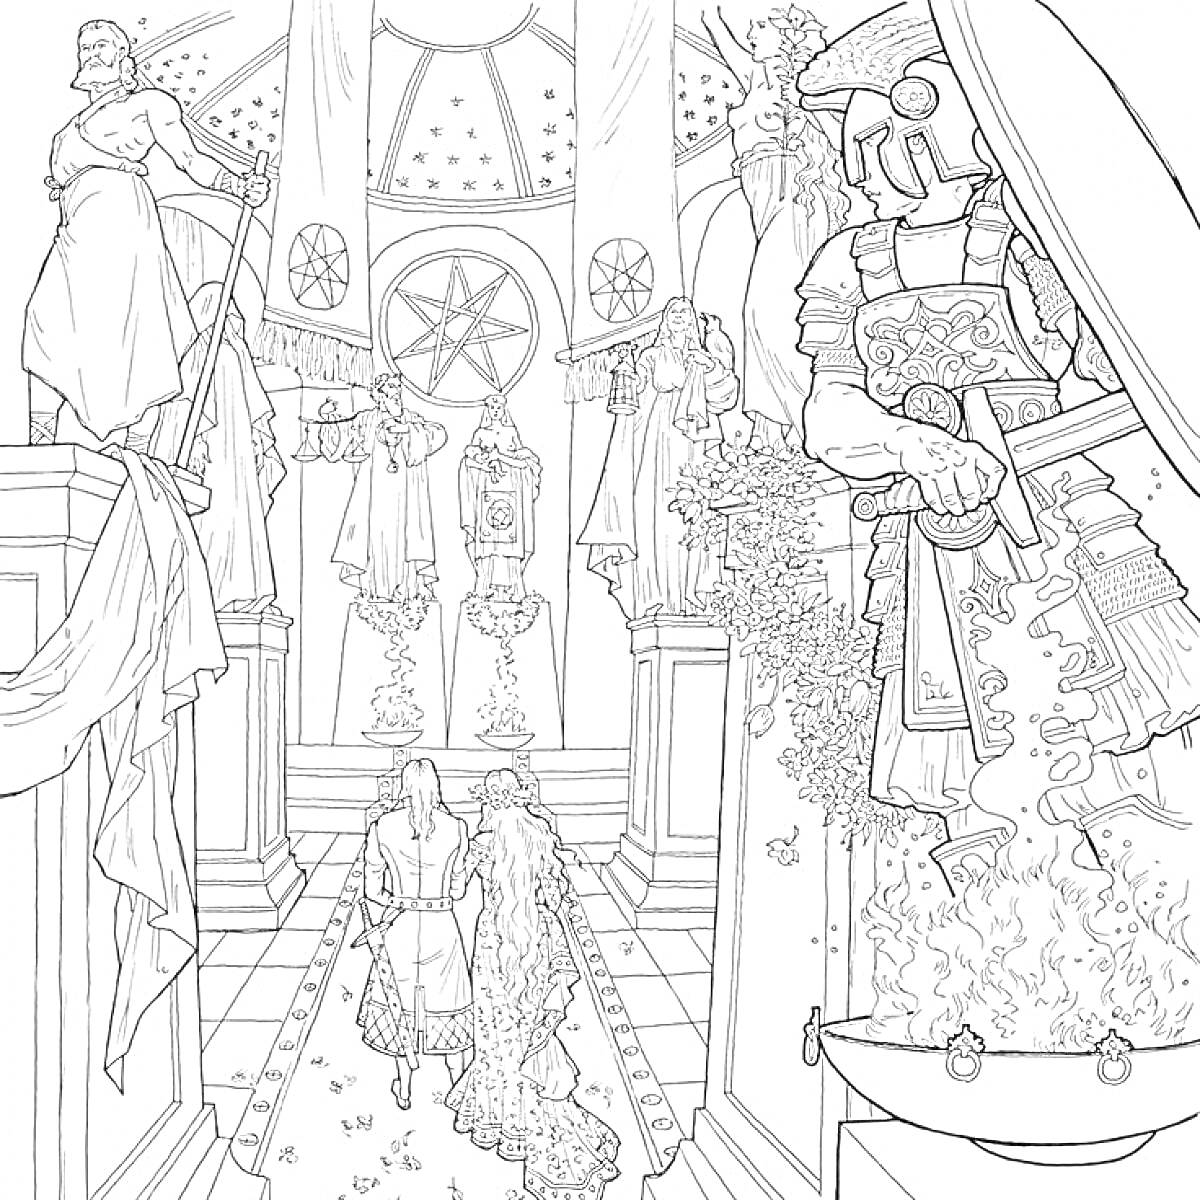 Раскраска Внутренний интерьер с религиозной символикой, персонажи входят в зал с лавровыми листьями, стражник с правой стороны, разнообразные статуи и декорации на стенах